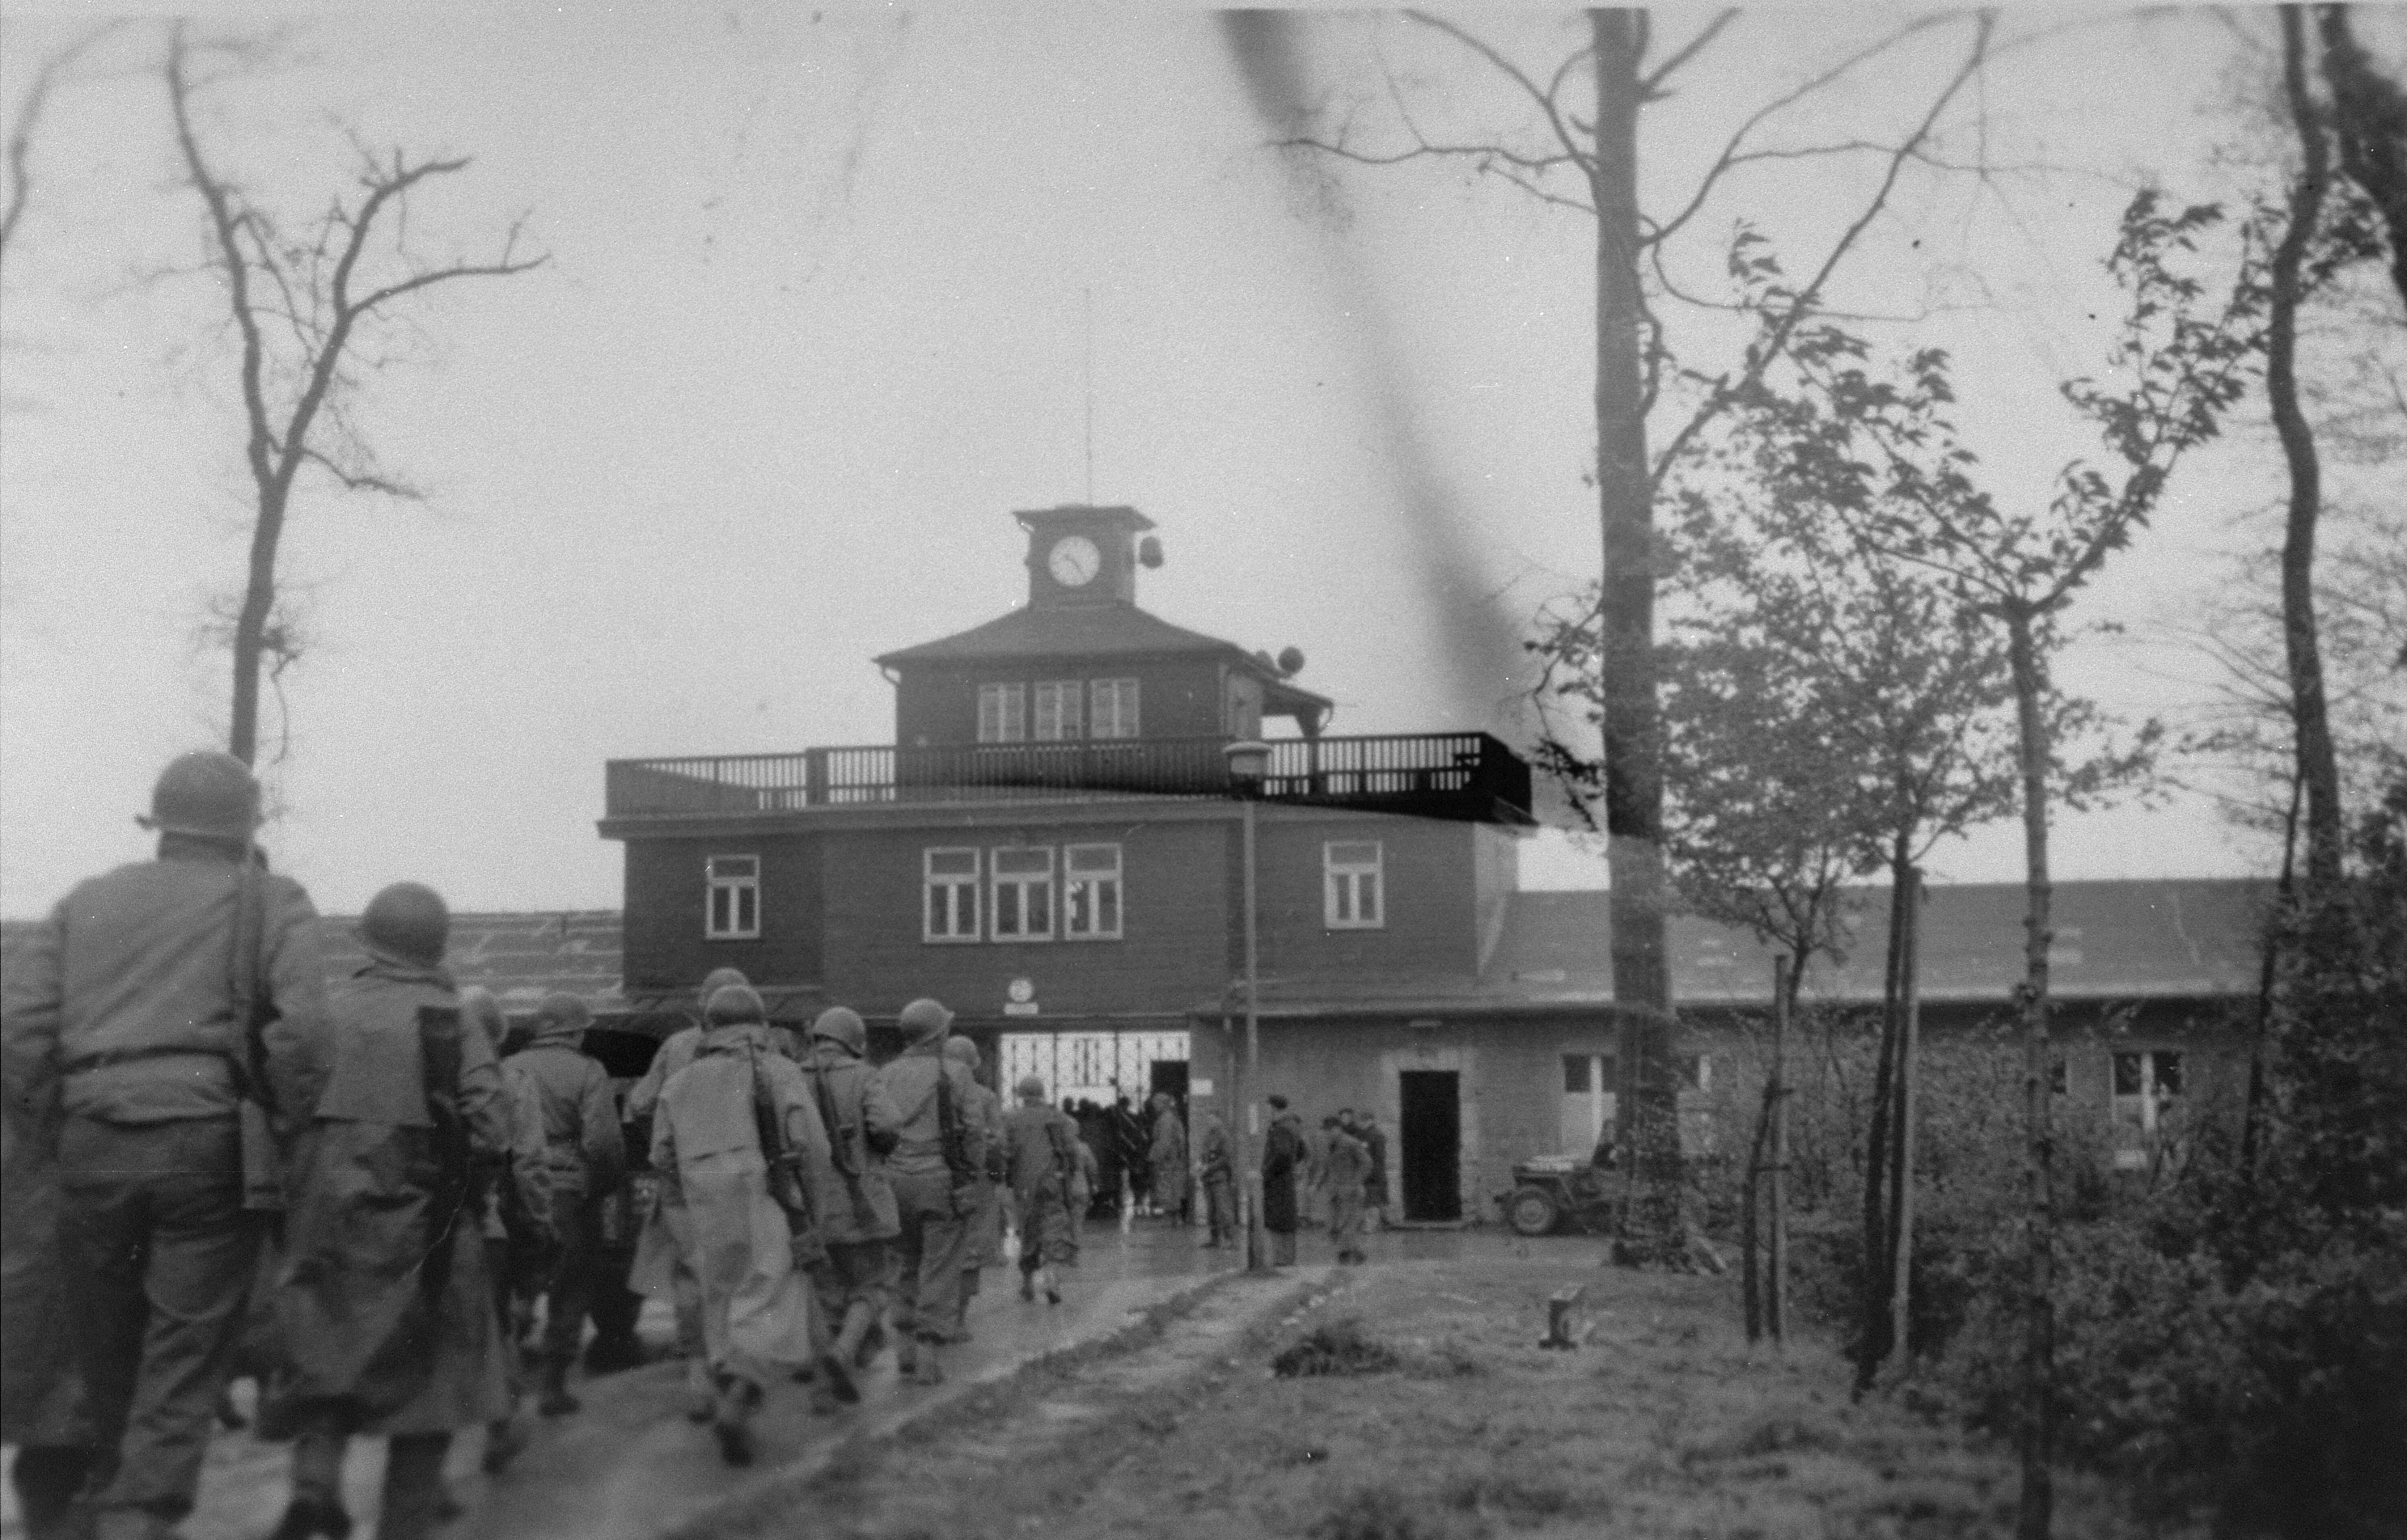 11 апреля 1945 года. Концлагерь Бухенвальд 11 апреля 1945 года. Бухенвальд Тюрингия. Концентрационный лагерь Бухенвальд. Освобождение узников концлагеря Бухенвальд..